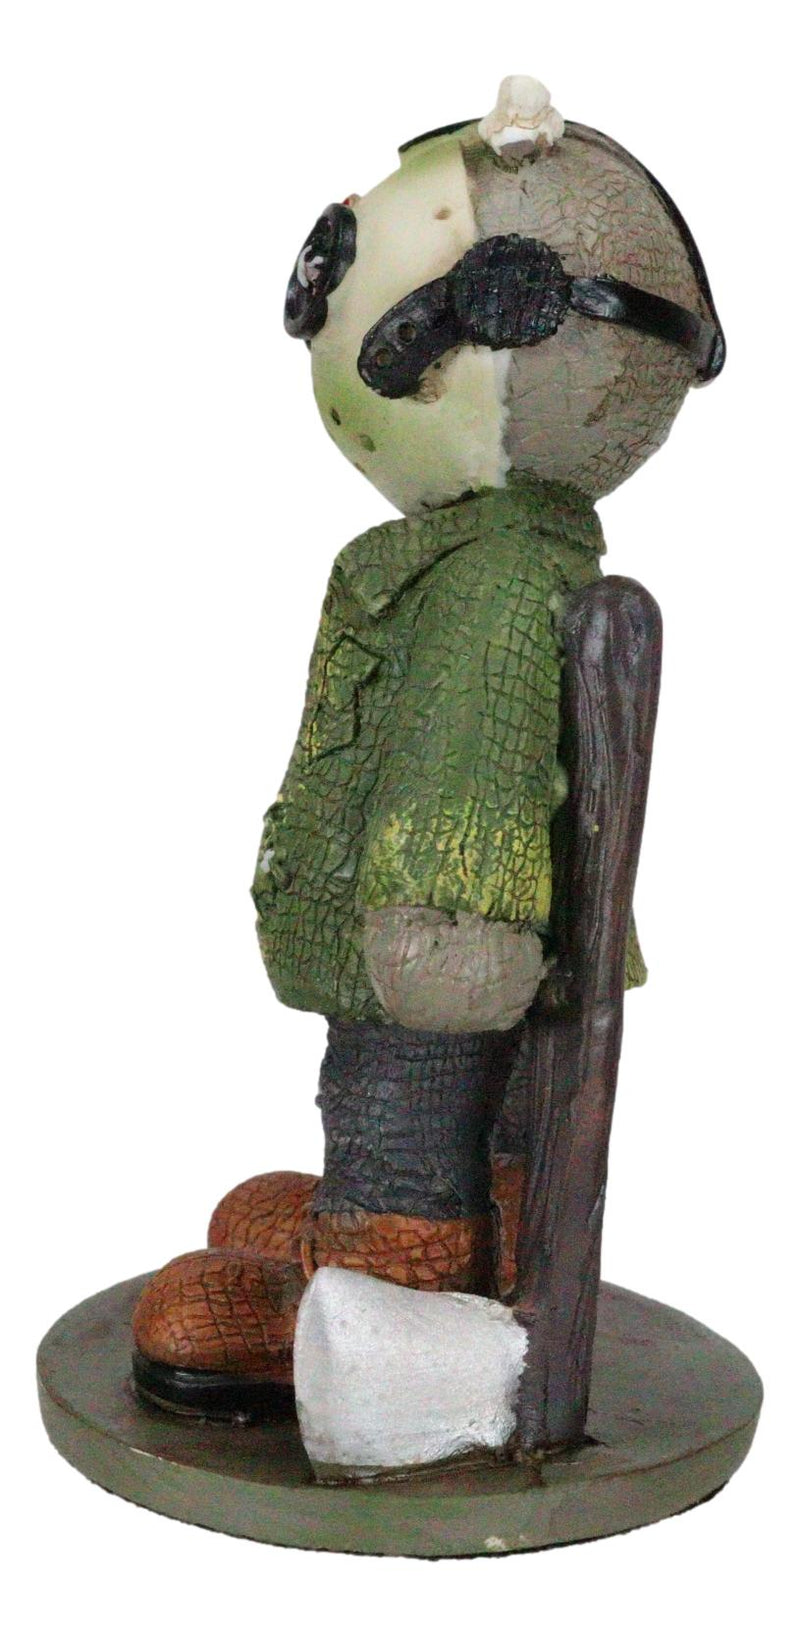 Ebros Pinheadz Monster with Voodoo Stitches Figurine 4.25"H (Jason Voorhees)